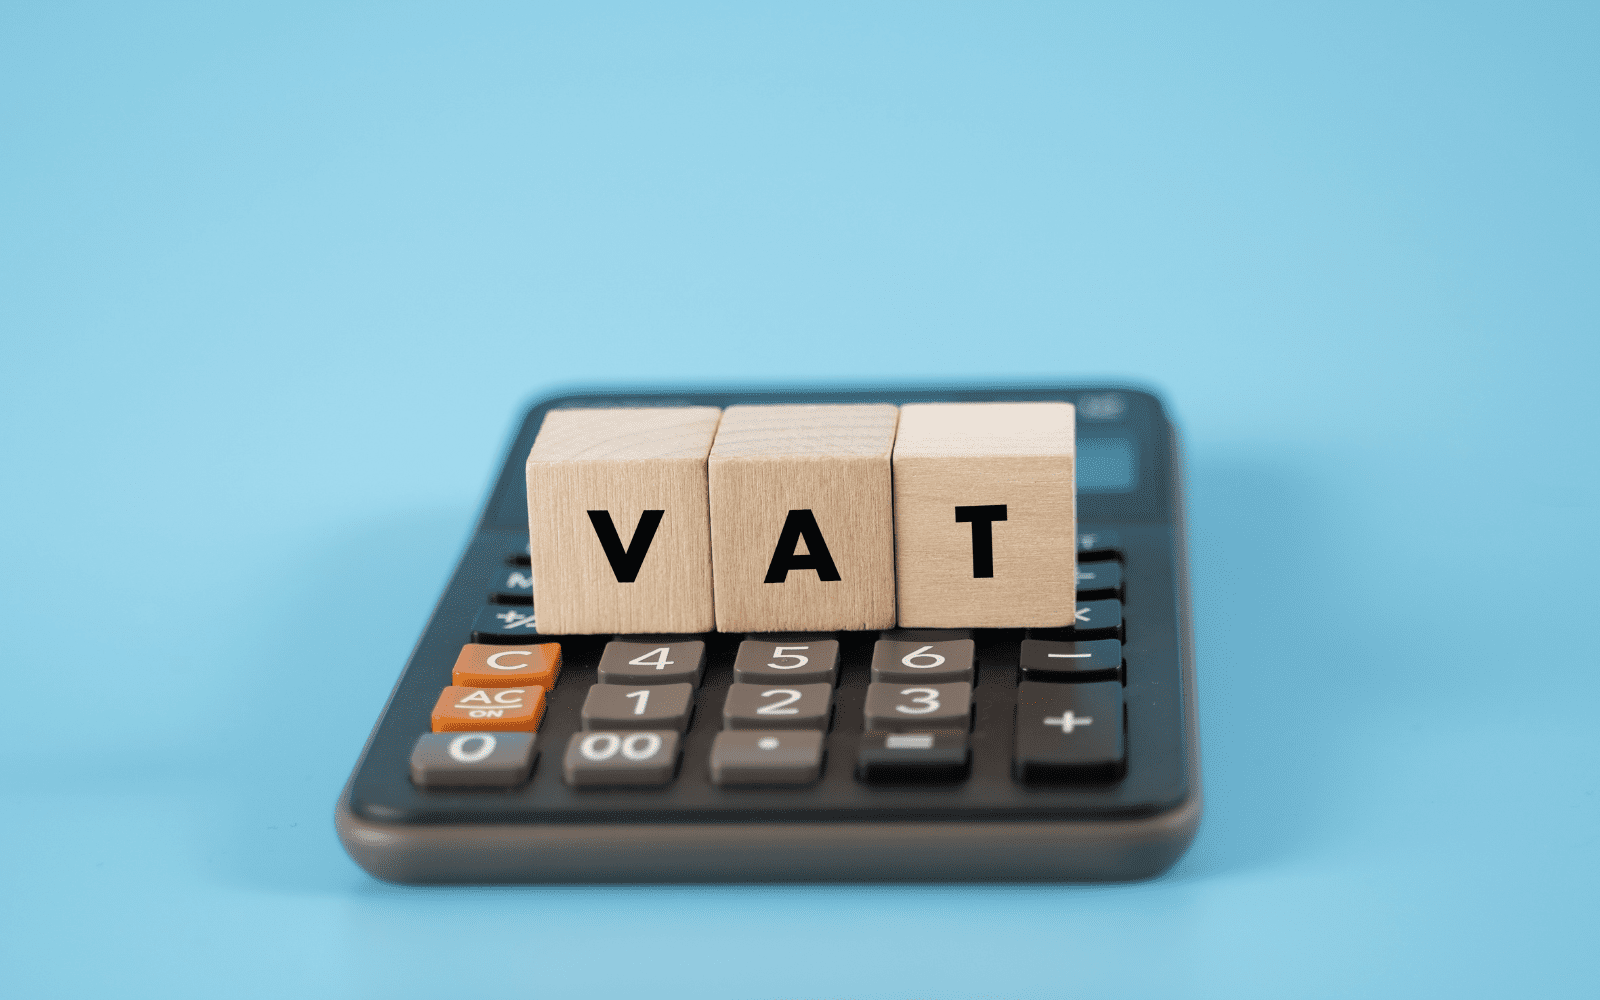 New VAT